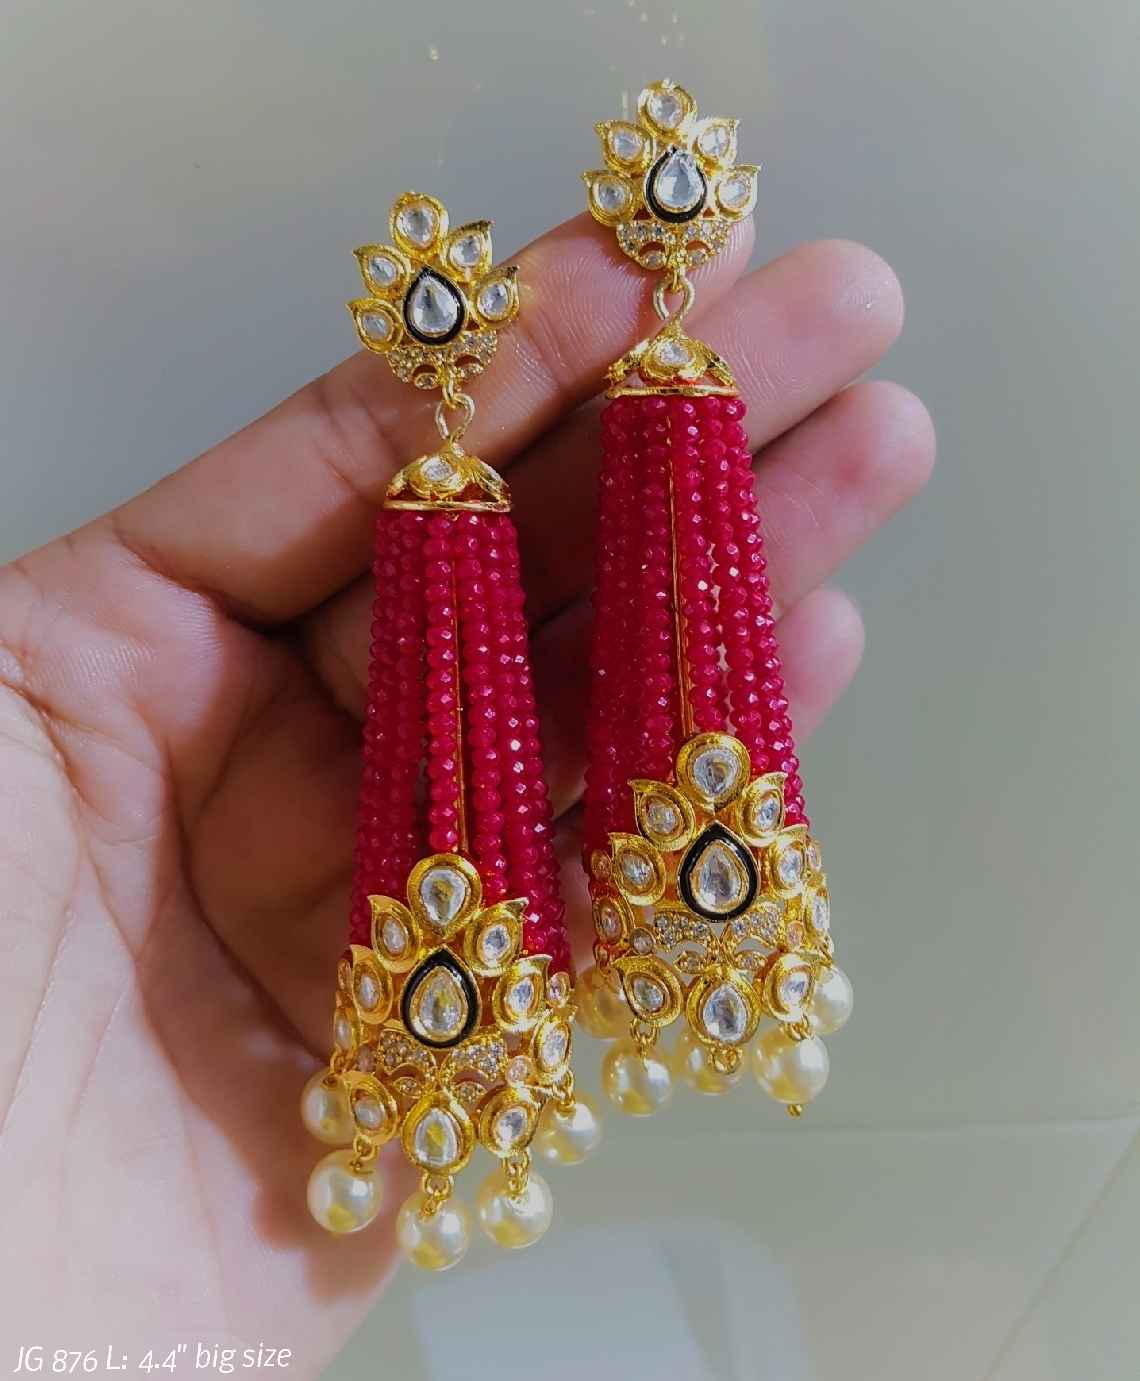 Ritzi Victorian inspired earrings